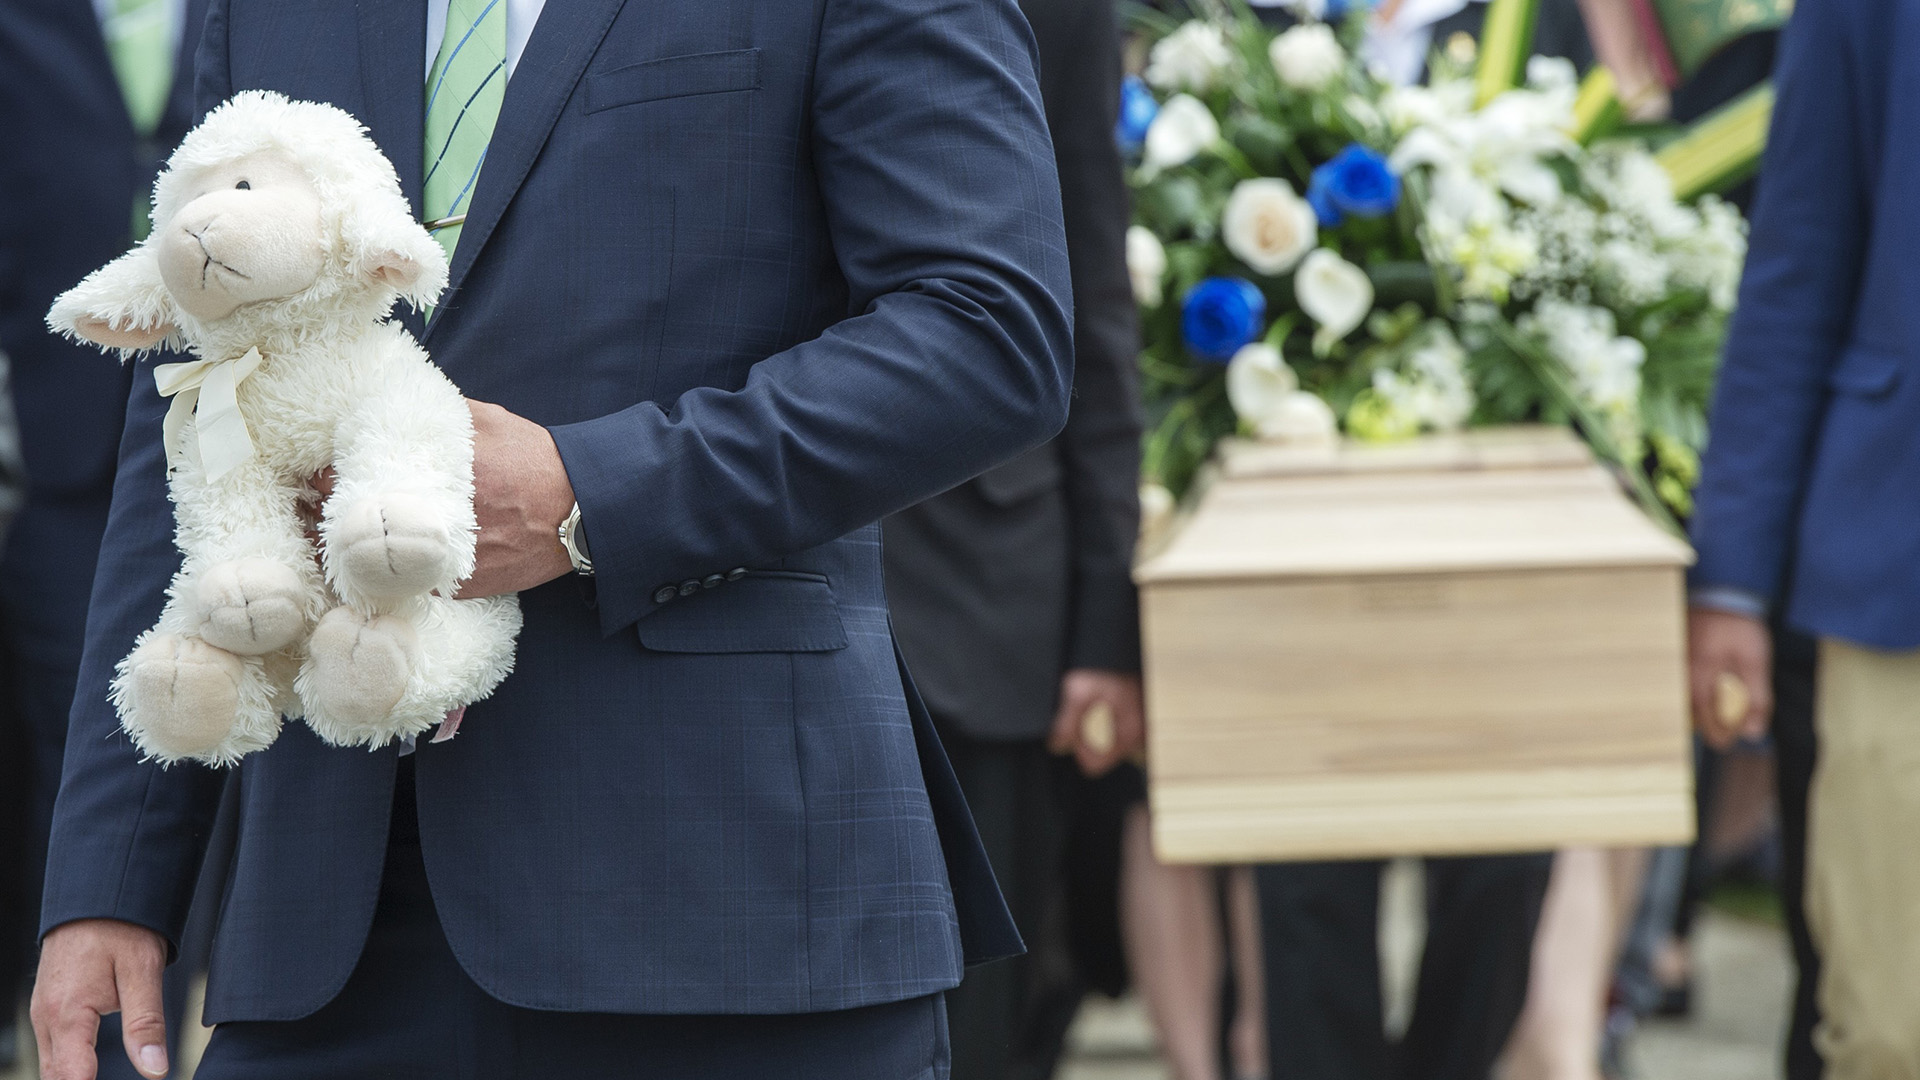 Un homme tient une peluche à proximité du cercueil de la fillette martyre de Granby, lors des funérailles de celle-ci en mai 2019.